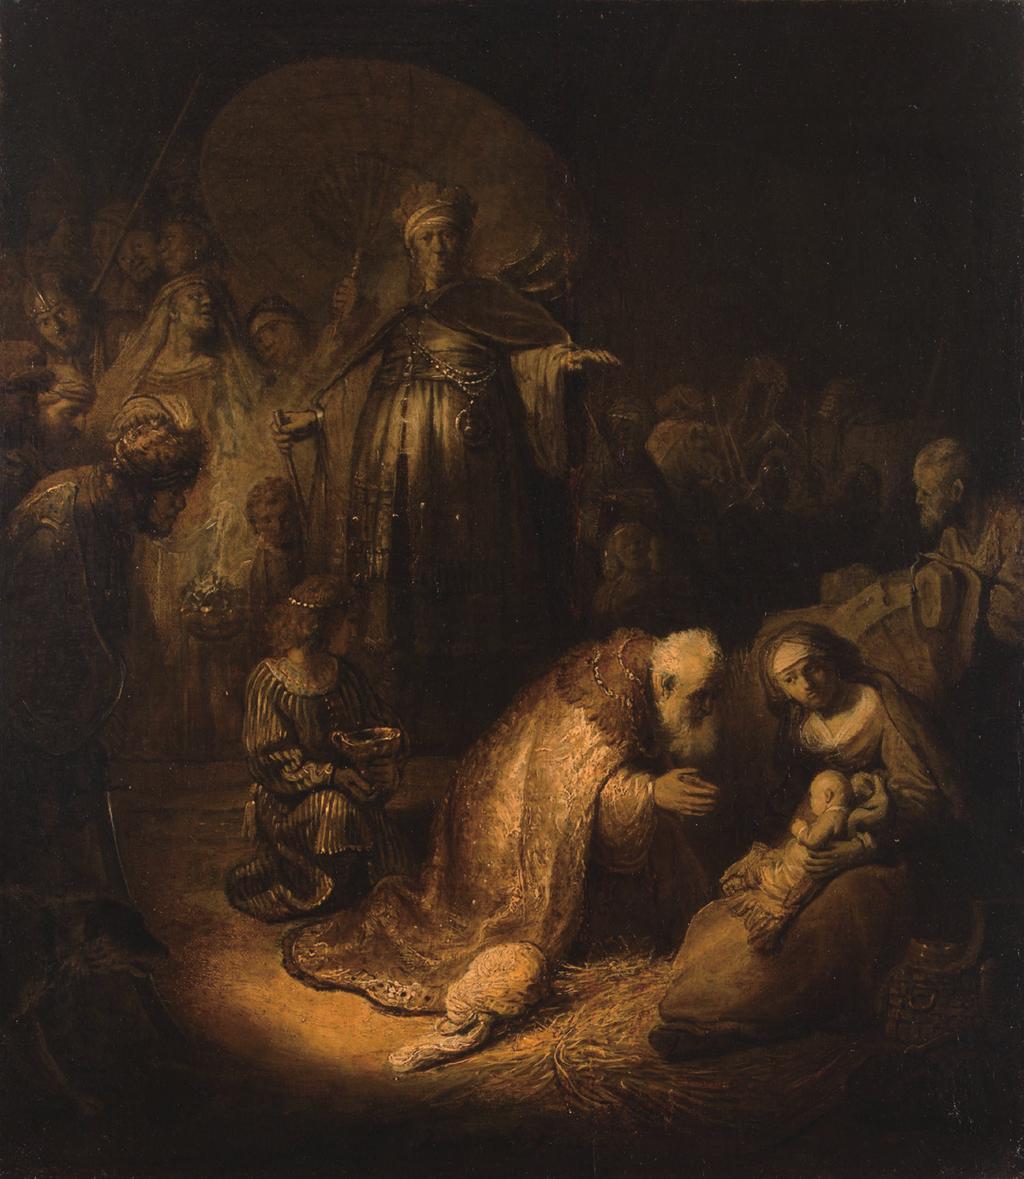 그림 읽어주는 신부 동방박사의 경배 손 용 환 요셉 신부 / 캐나다 런던 성 김대건 한인성당 속에 갇혀있다. 렘브란트 (Rembrandt, 1632년 하지만 예수님을 따르 에 <동방박사의 경배 는 이들은 모두 빛을 향 >를 그리자유 기법으 해 나아간다. 그 출발은 로 그렸고, 빛의 방향 분향 하 는 중년의 동방 과 분량, 사람의 시선 박사다.